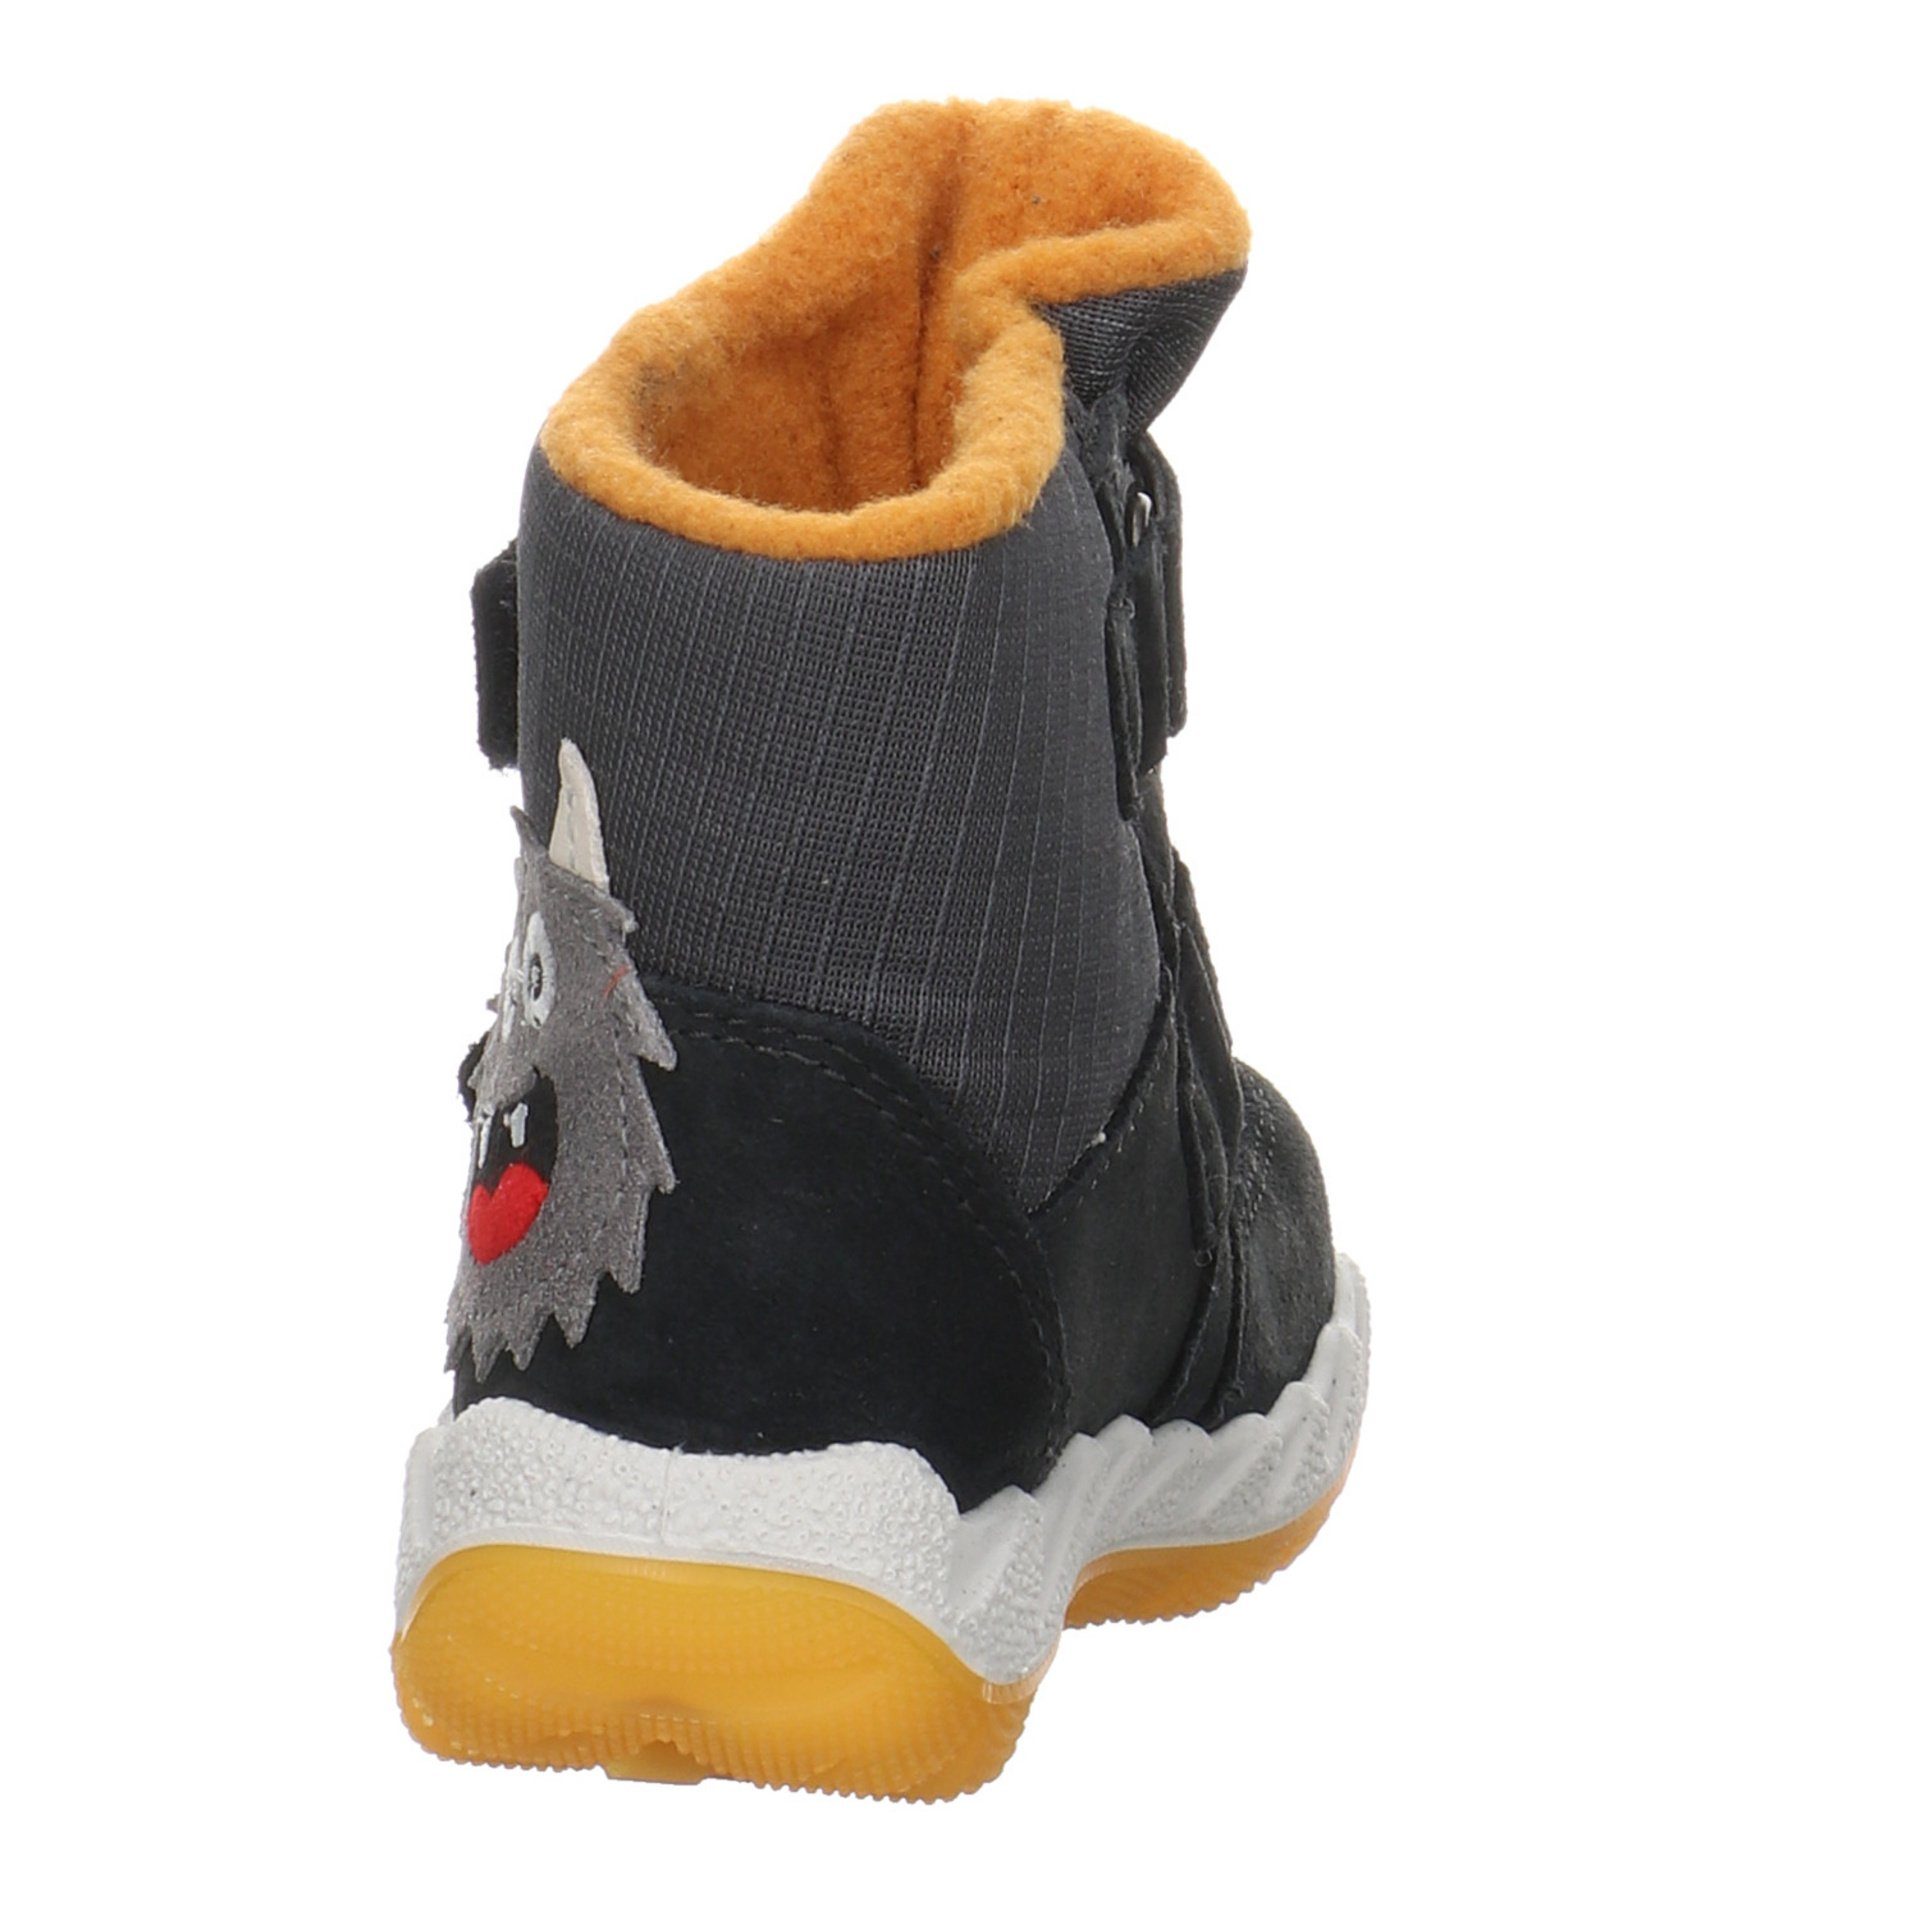 Superfit Baby Icebird Lauflernschuh grau Leder-/Textilkombination Krabbelschuhe Lauflernschuhe Boots gelb